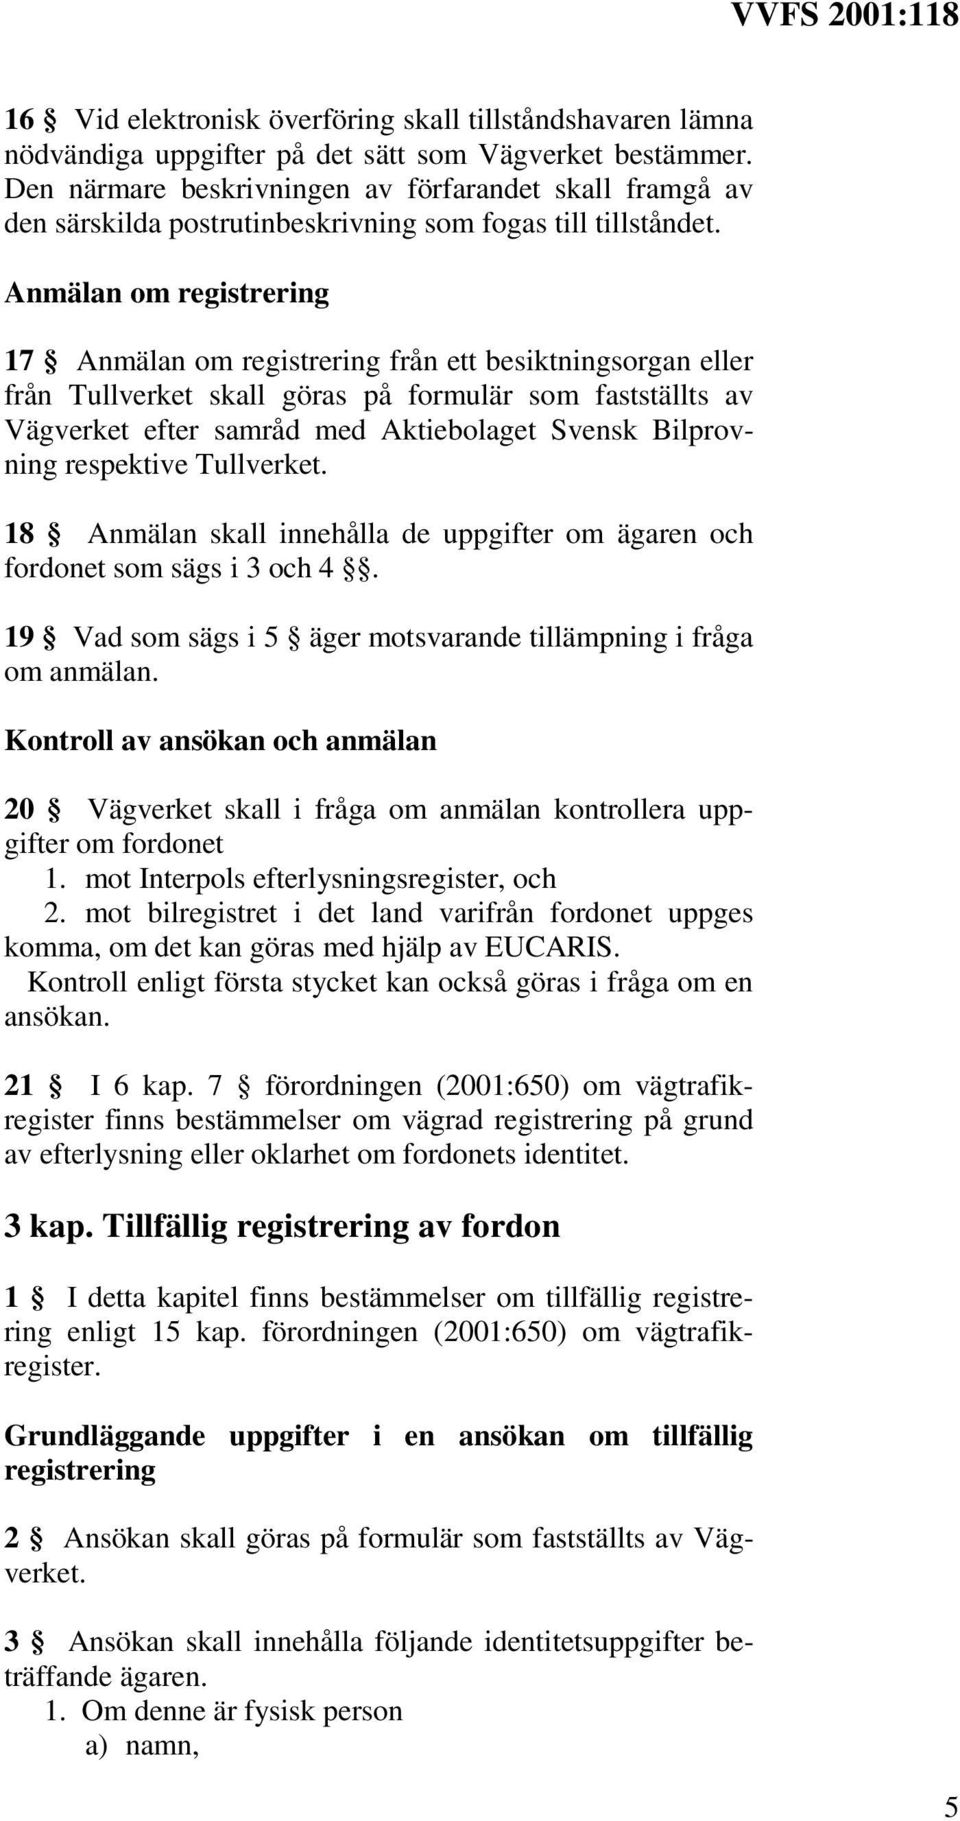 Anmälan om registrering 17 Anmälan om registrering från ett besiktningsorgan eller från Tullverket skall göras på formulär som fastställts av Vägverket efter samråd med Aktiebolaget Svensk